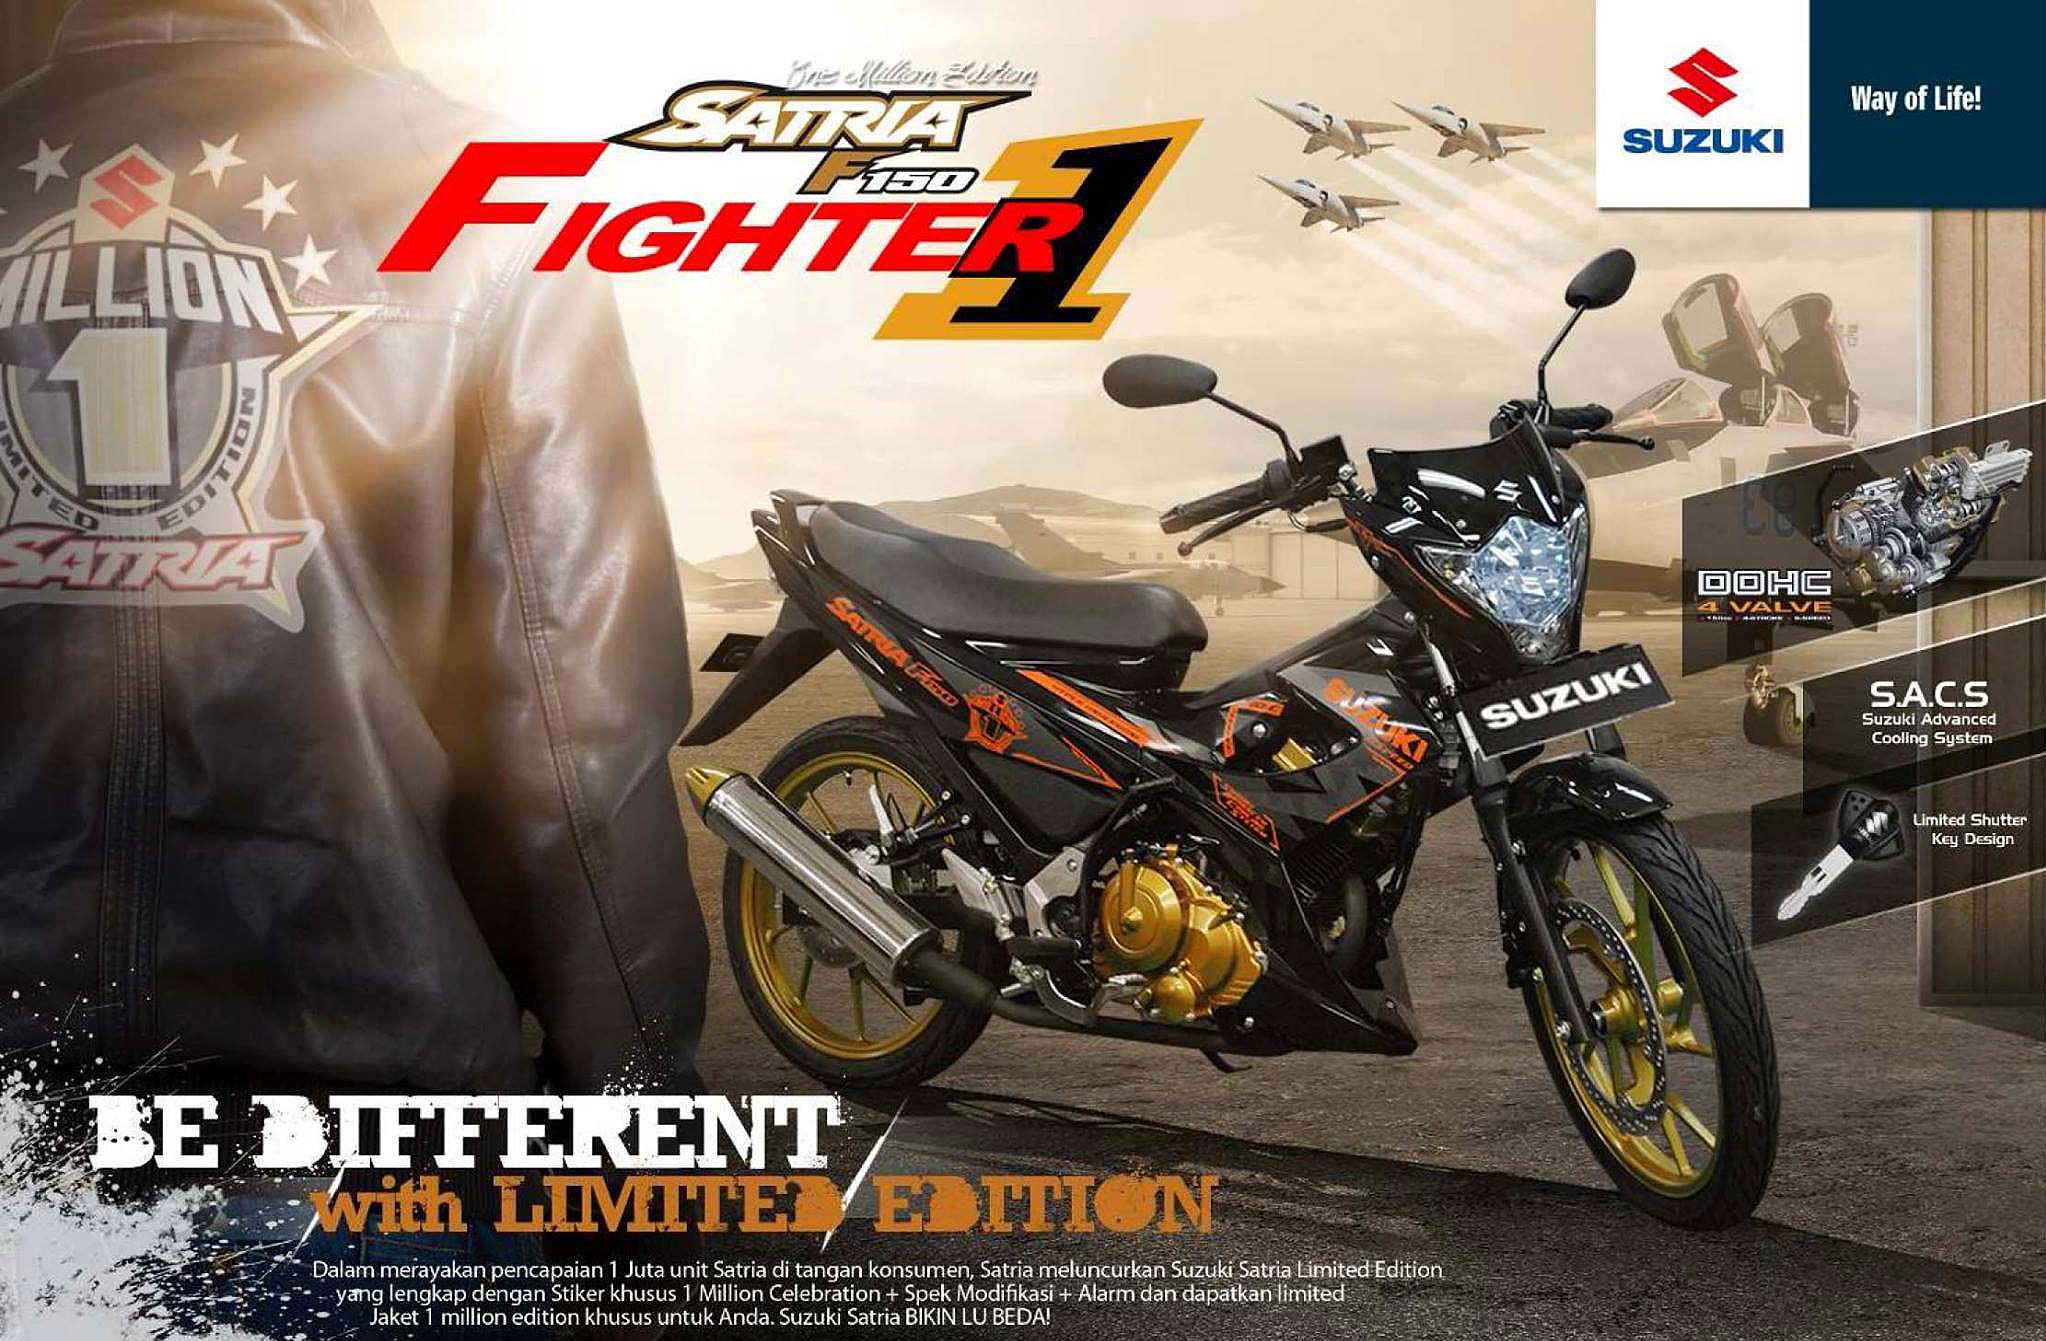 Nasional, Suzuki Satria Fighter 1 special edition 2013: Edisi Khusus Satu Juta Unit Satria F150 Di Indonesia